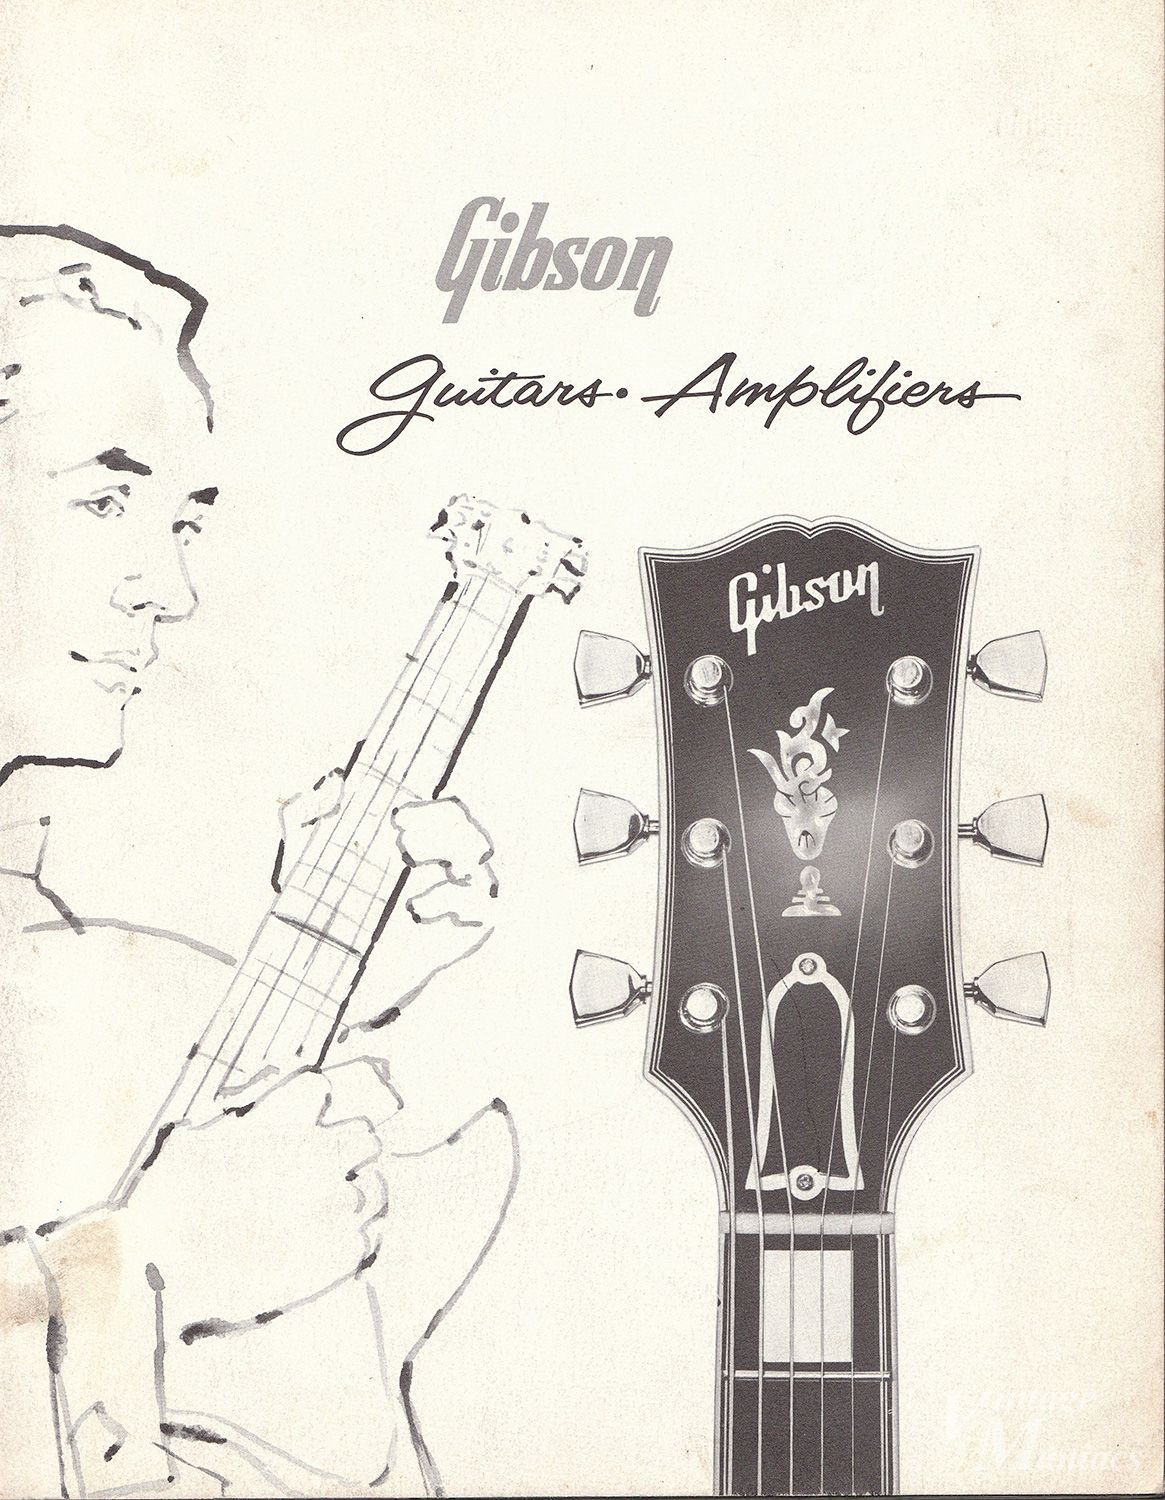 1981年ギブソン・エピフォン総合 ヴィンテージカタログ - エレキギター